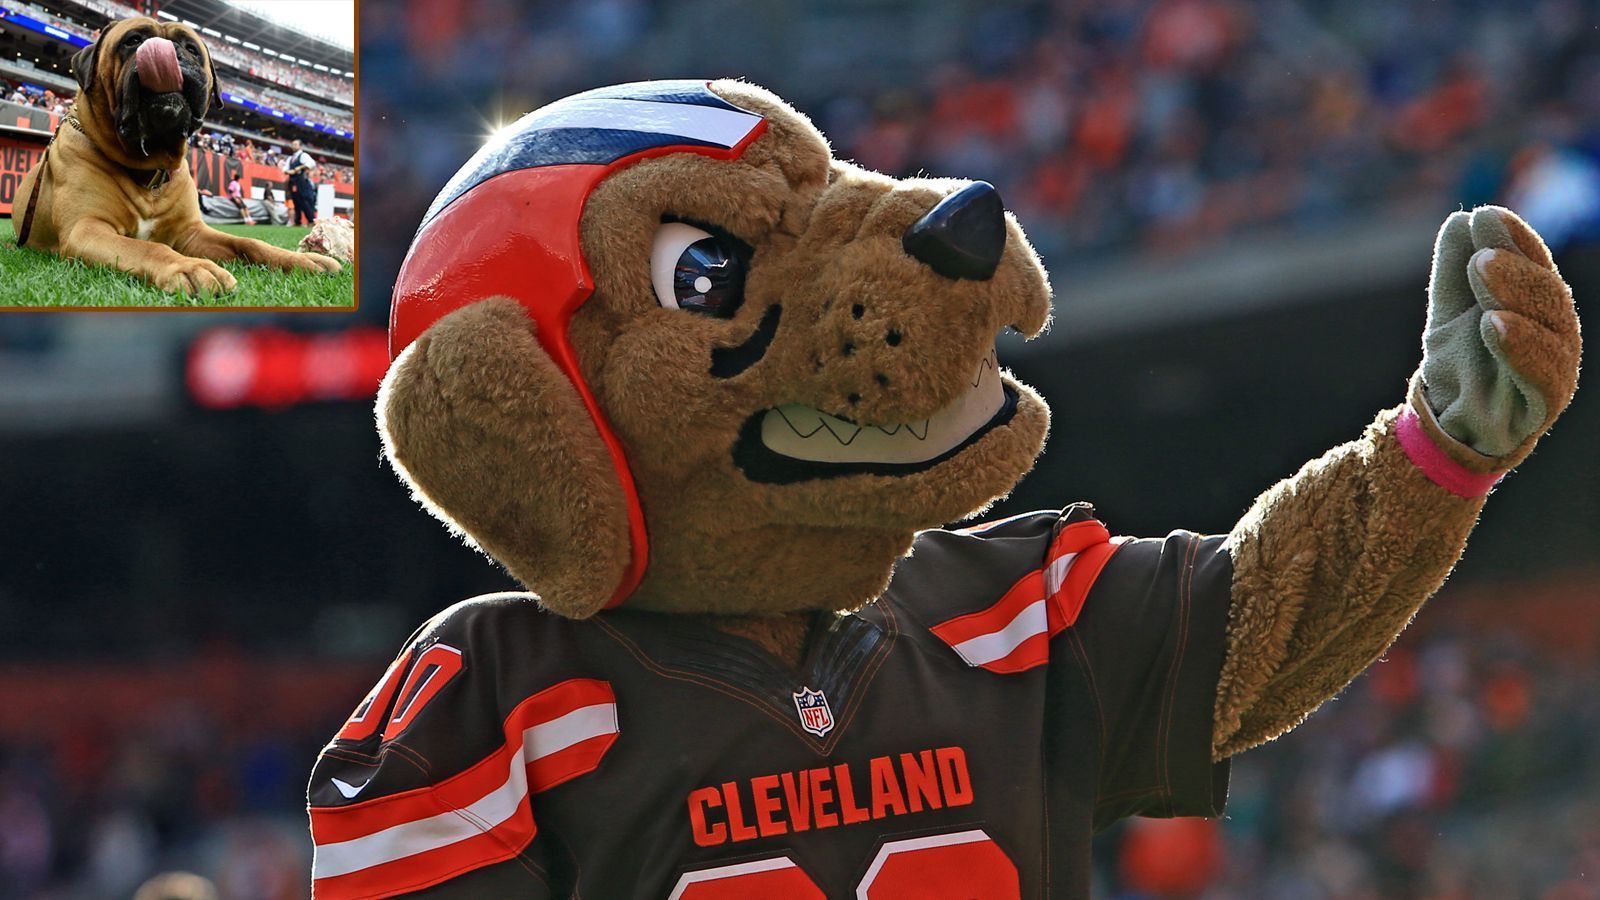 
                <strong>Cleveland Browns: Chomps und Swagger</strong><br>
                Die Browns haben kein Logo auf dem Helm, aber gleich zwei Maskottchen: einen Bullmastiff namens Swagger und den Plüschhund Chomps.
              